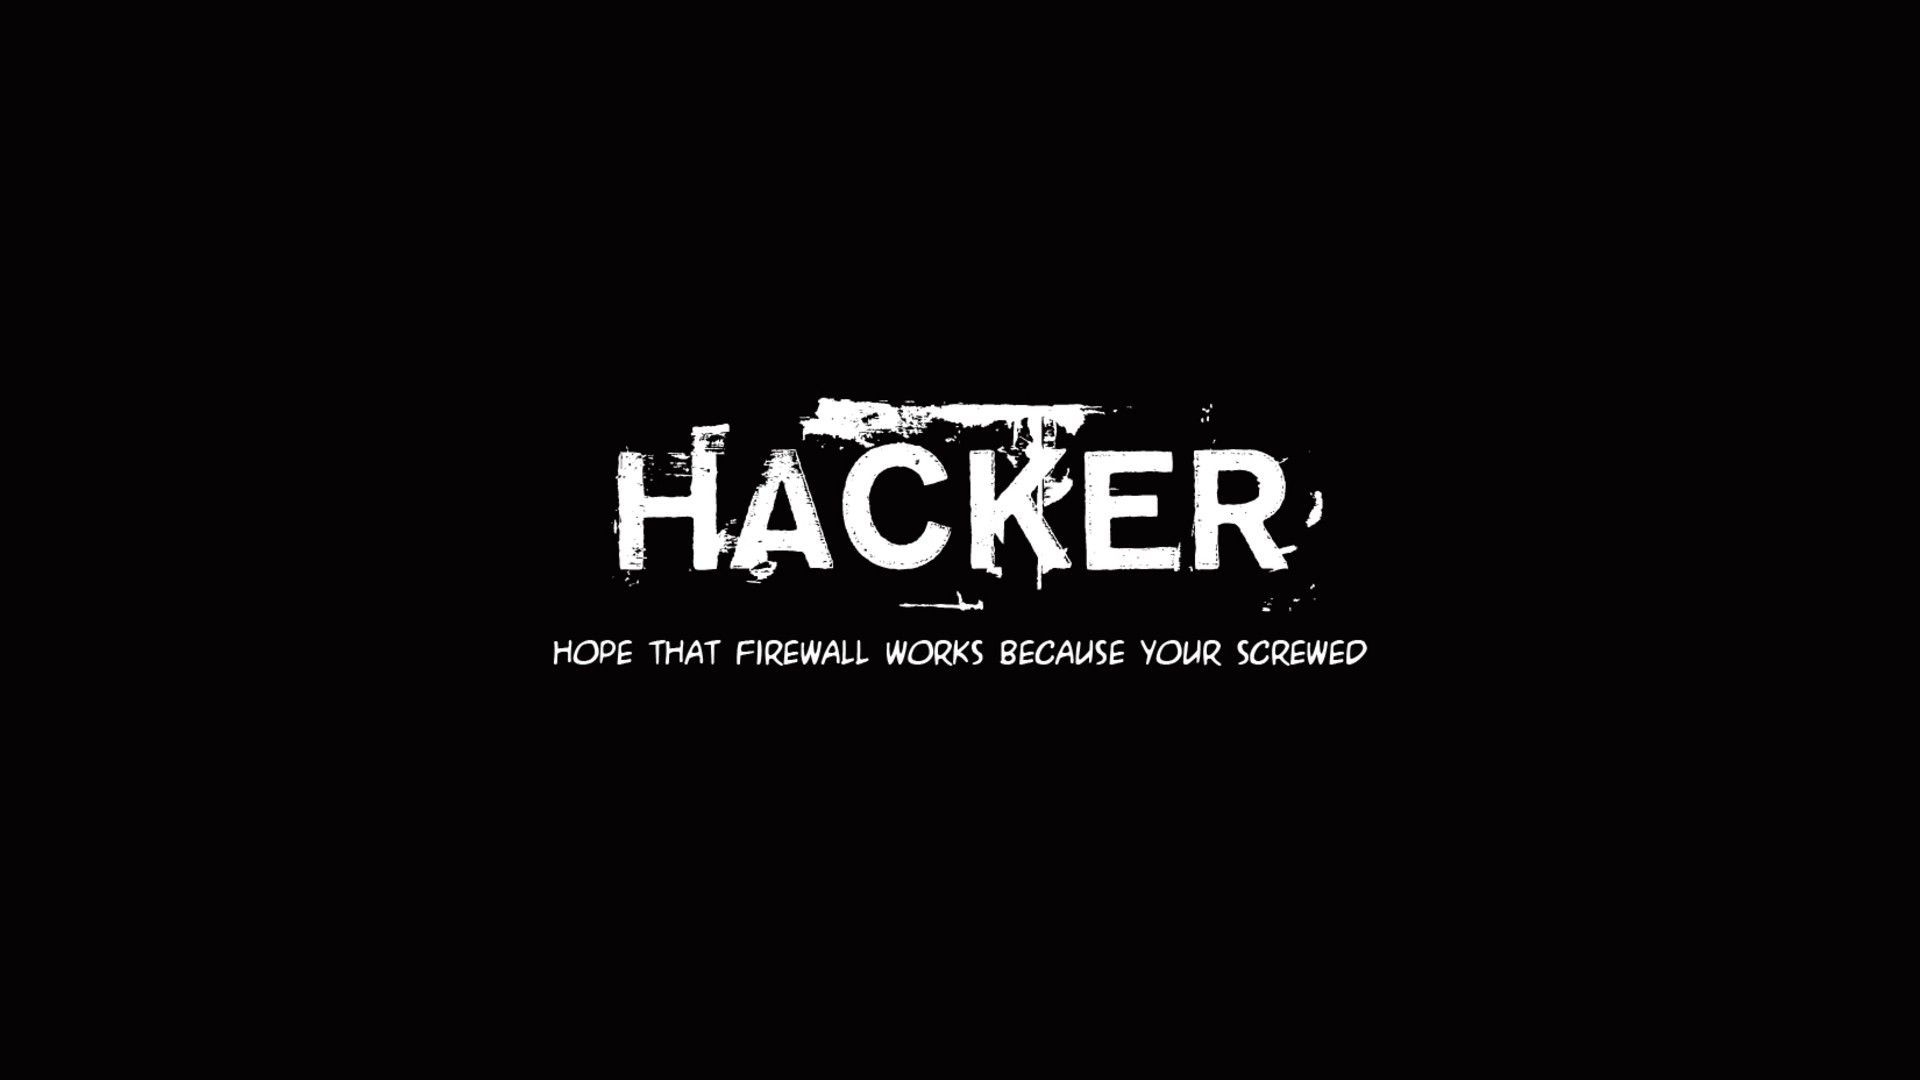 Wallpaper hacker hd funny - WideWallpaper.info Free HD Wide